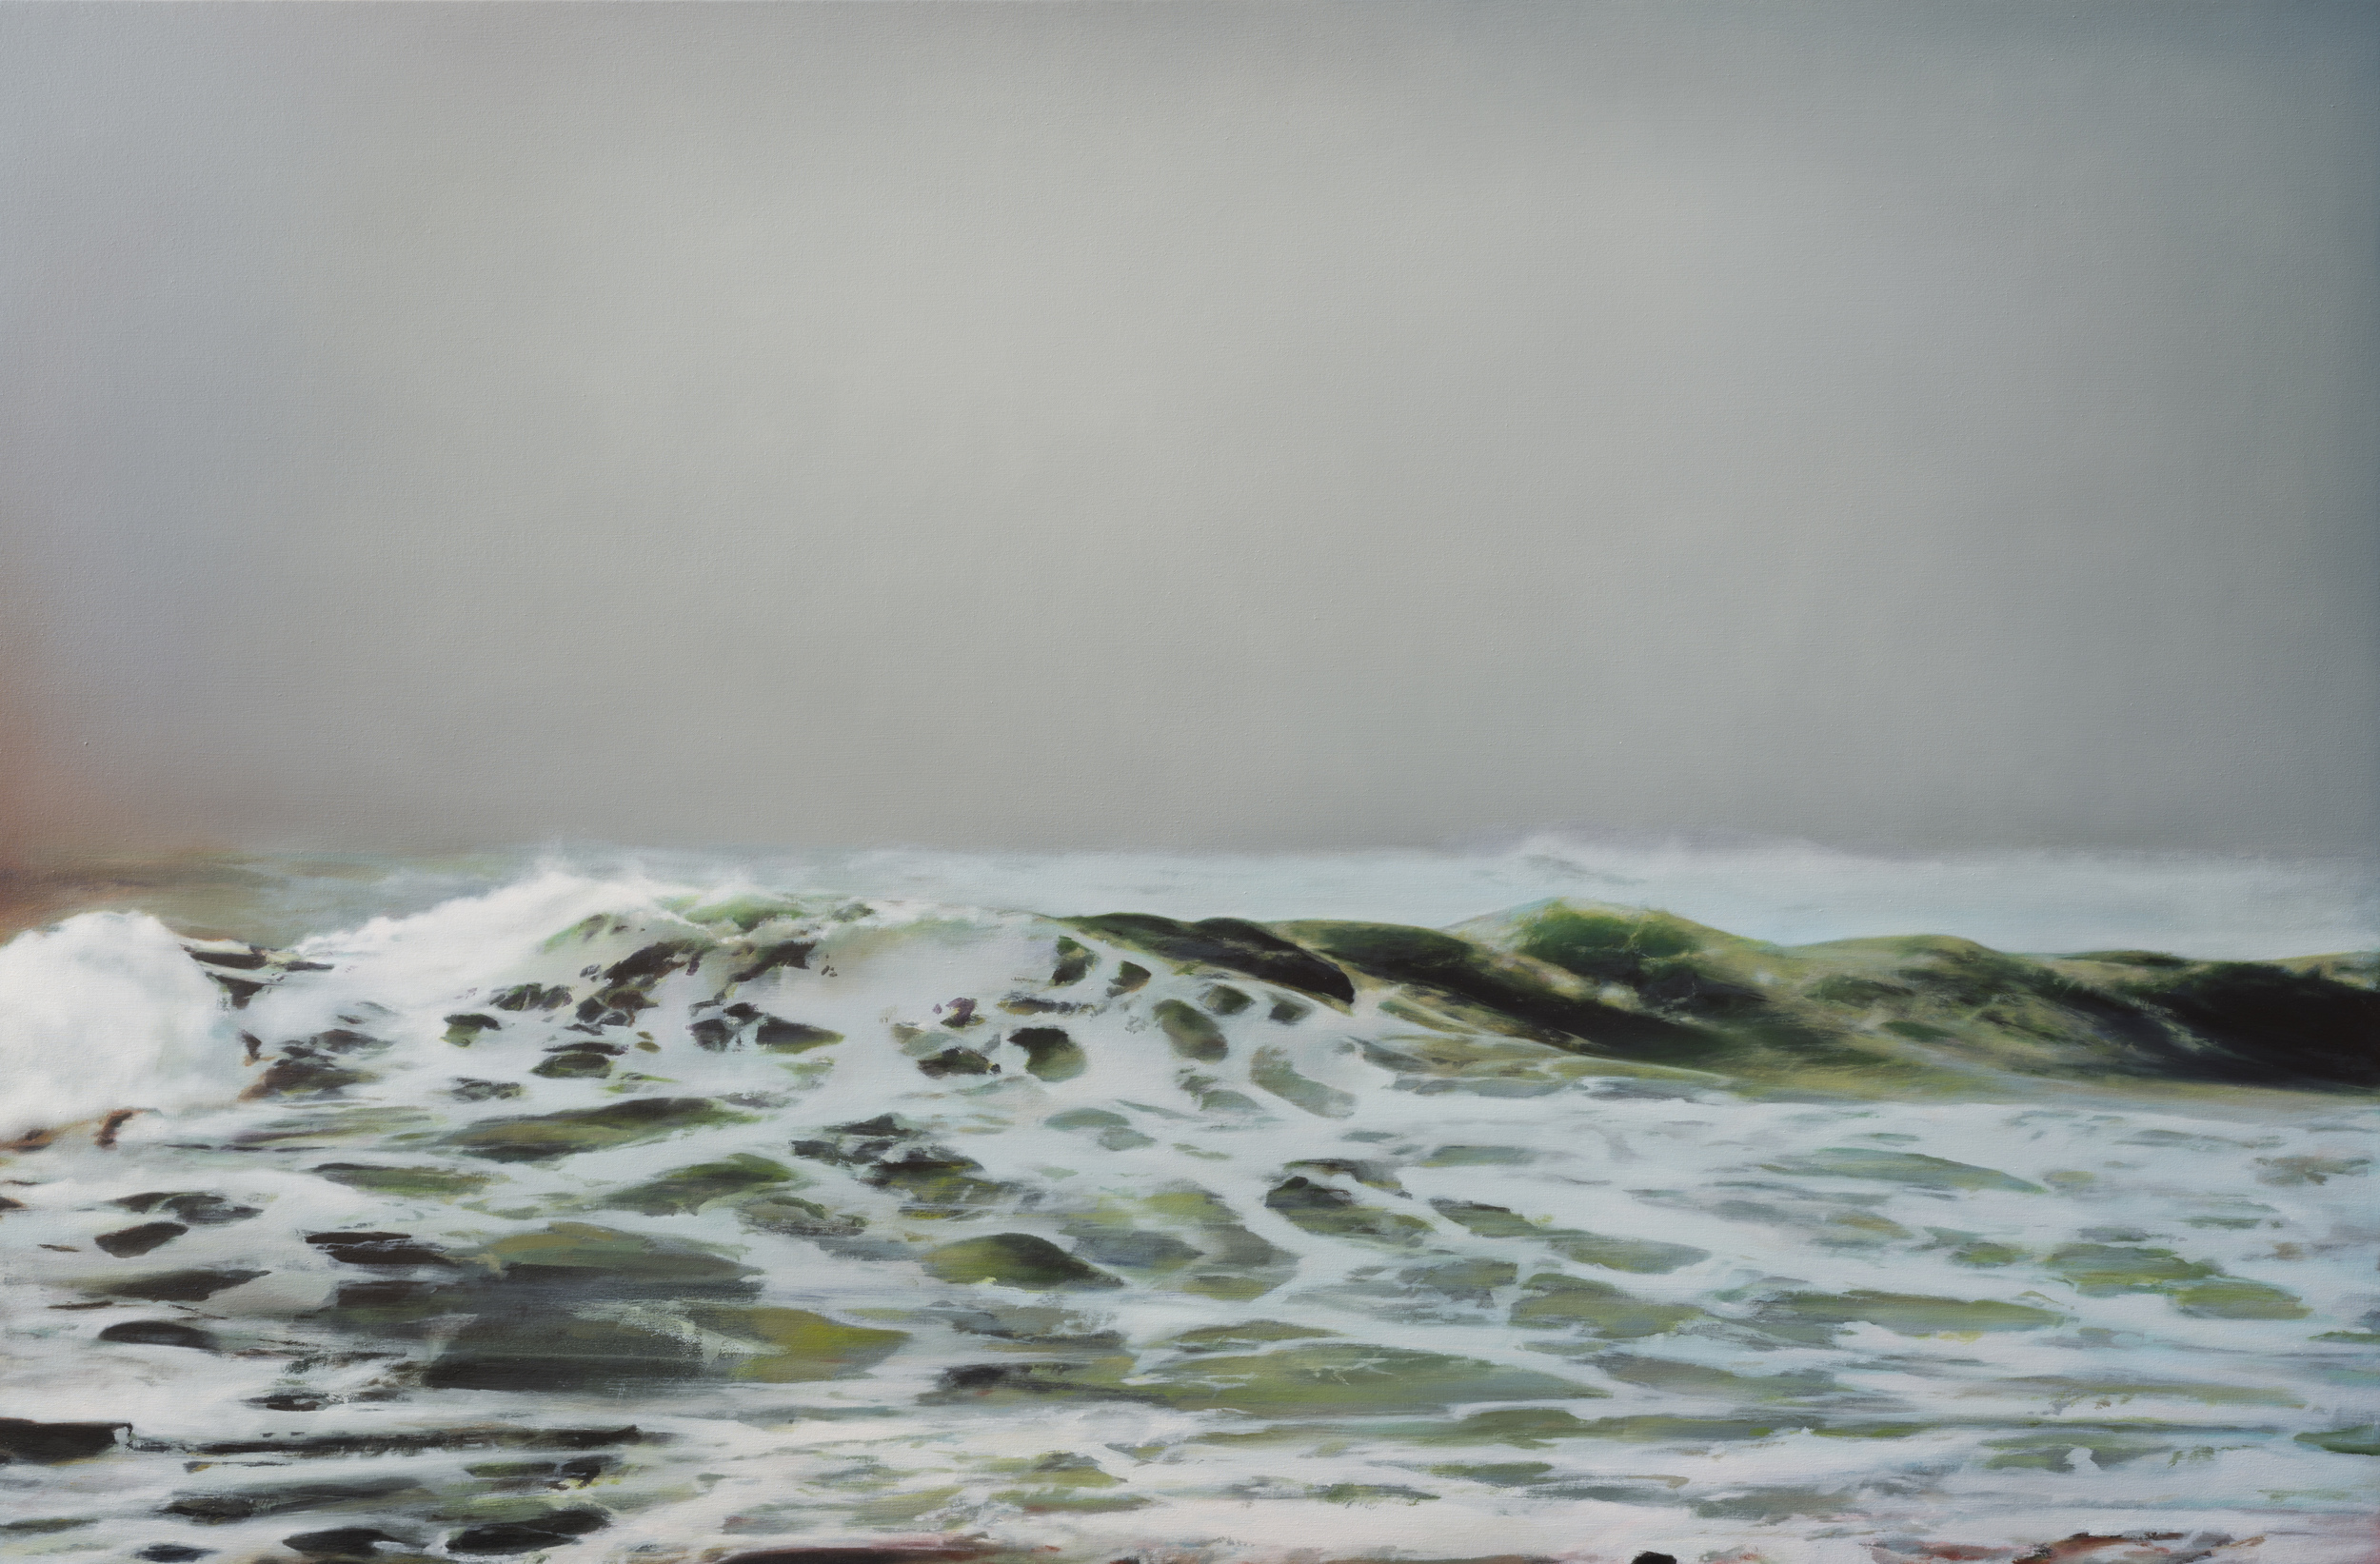   north beach&nbsp;&nbsp; •  42" x 64"  oil on canvas  2012    